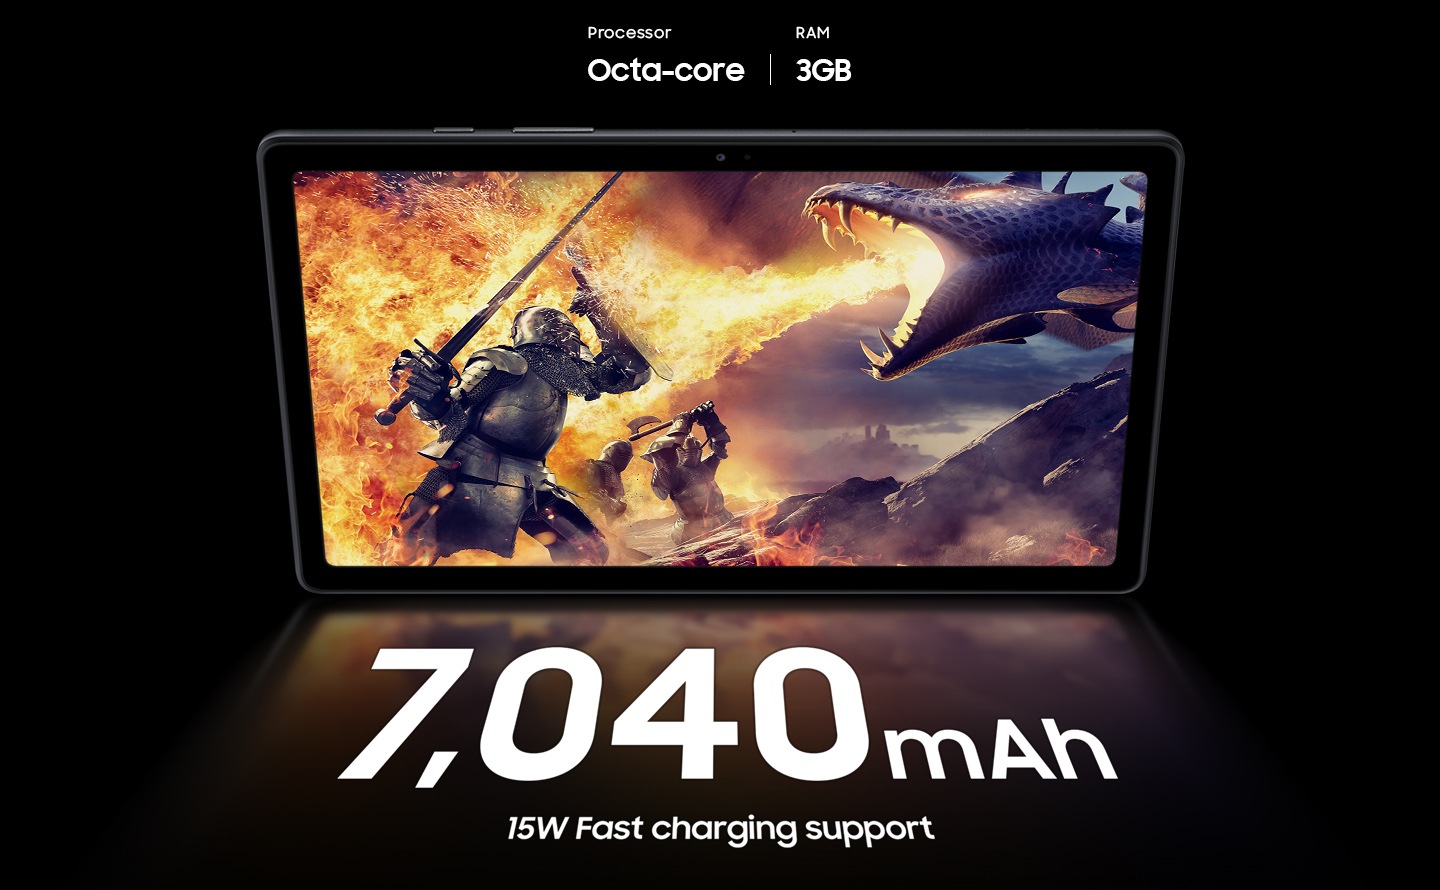 Se muestra una escena de un juego de acción y aventuras en la Galaxy Tab A7 con los textos del procesador Octa-core y 3 GB de RAM encima.